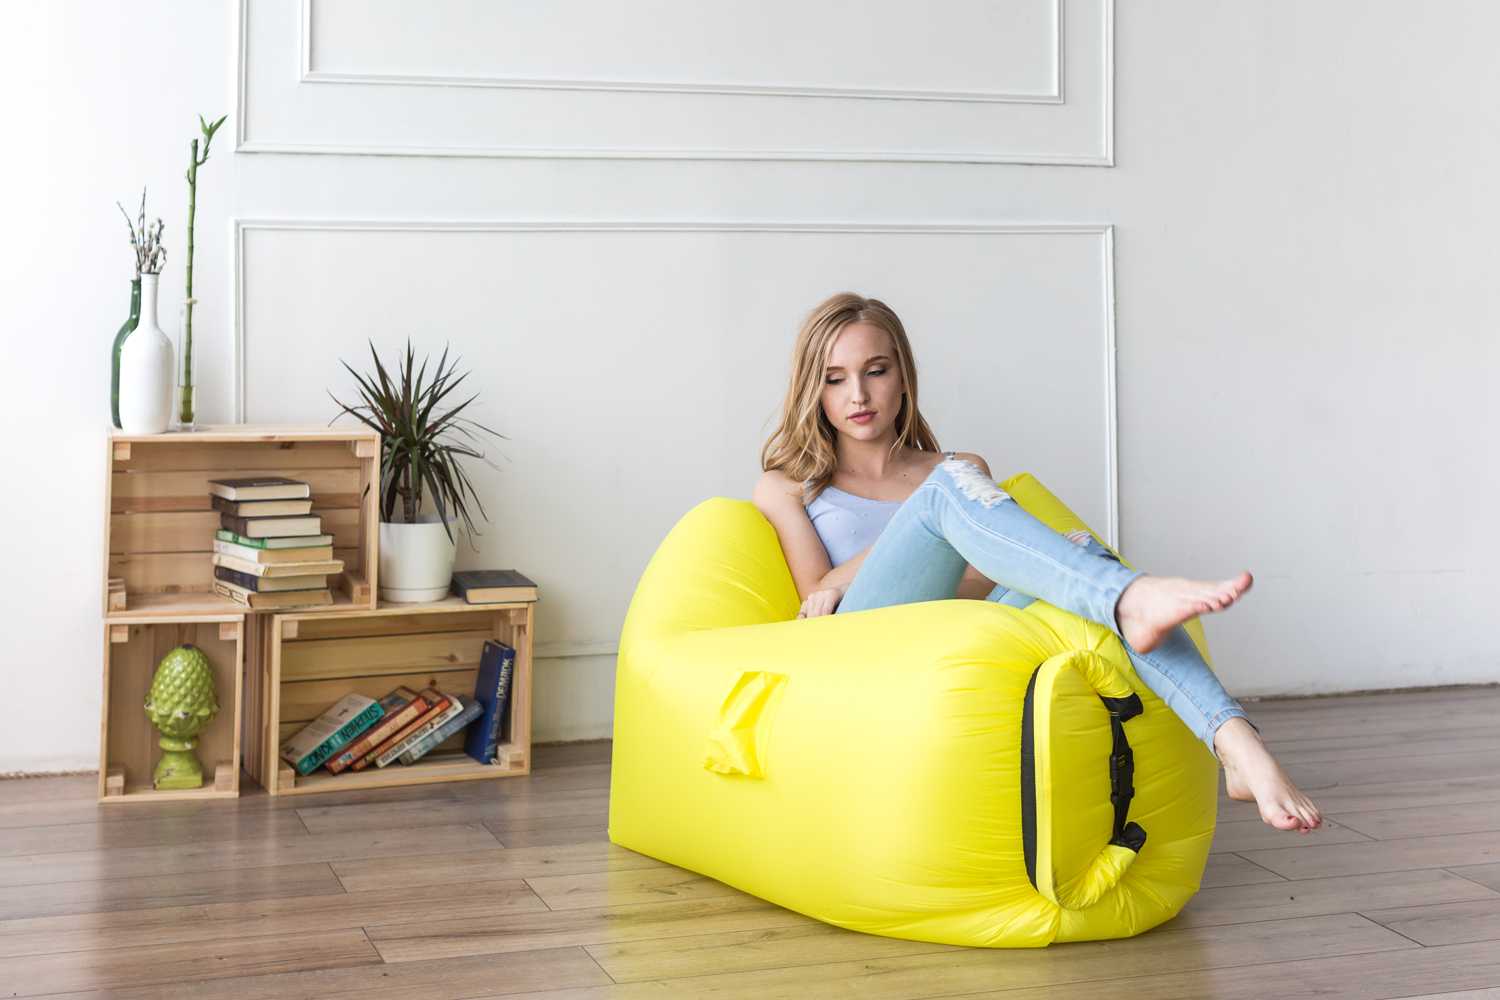 Lamzac hangout (ламзак) – надувной шезлонг, кресло-диван и гамак в одной вещи!